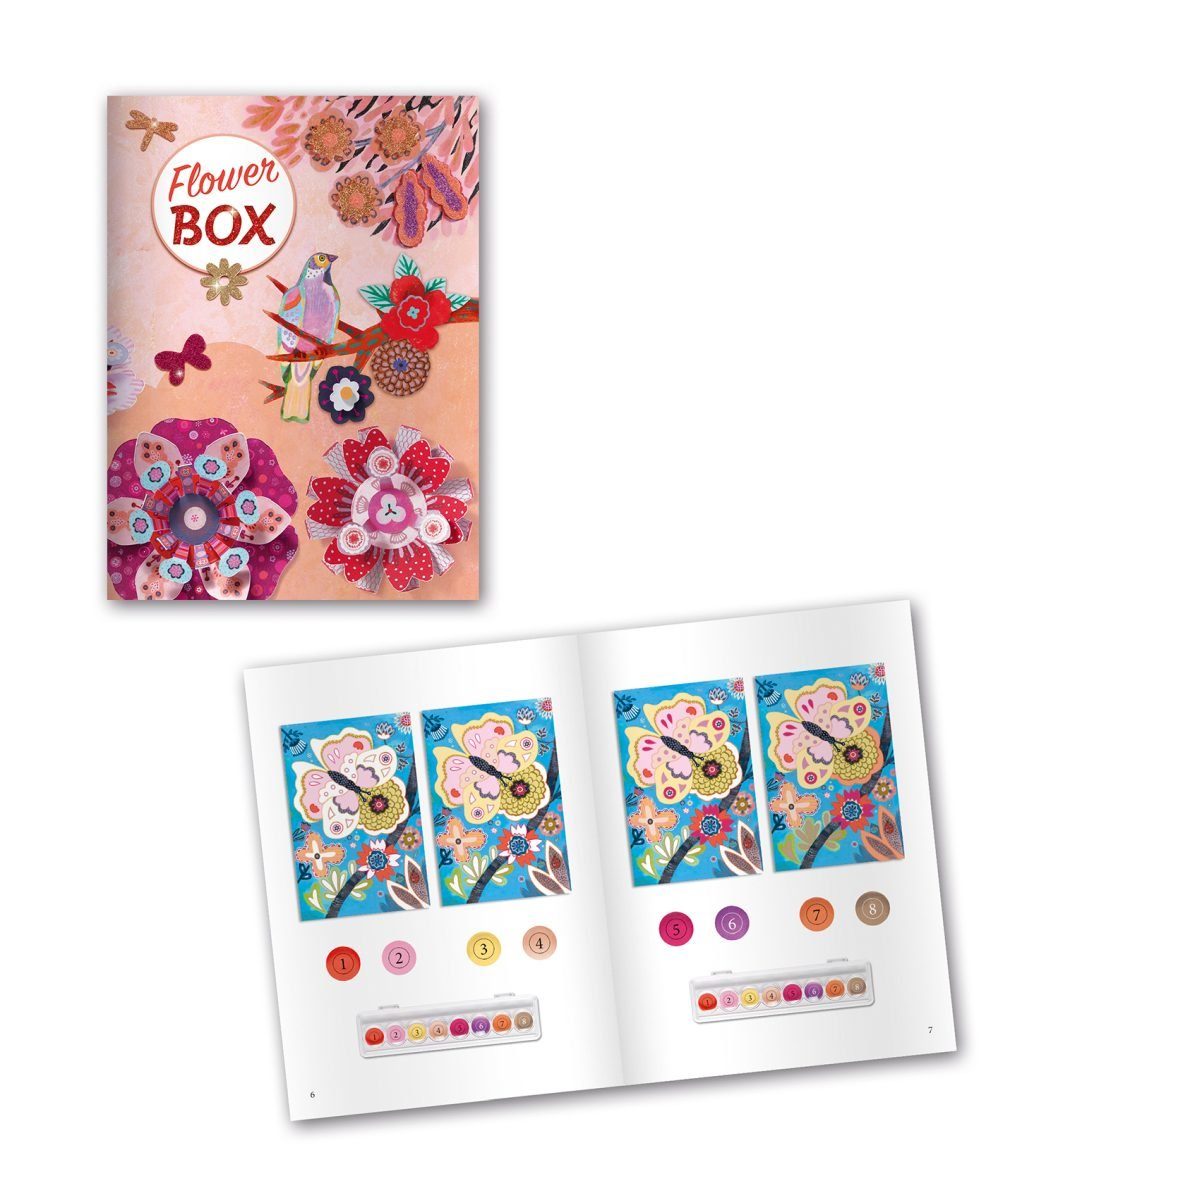 DJECO Kreativset Multi-Activity Aktivitäten 6 Blumengarten Kinder Kit für mit